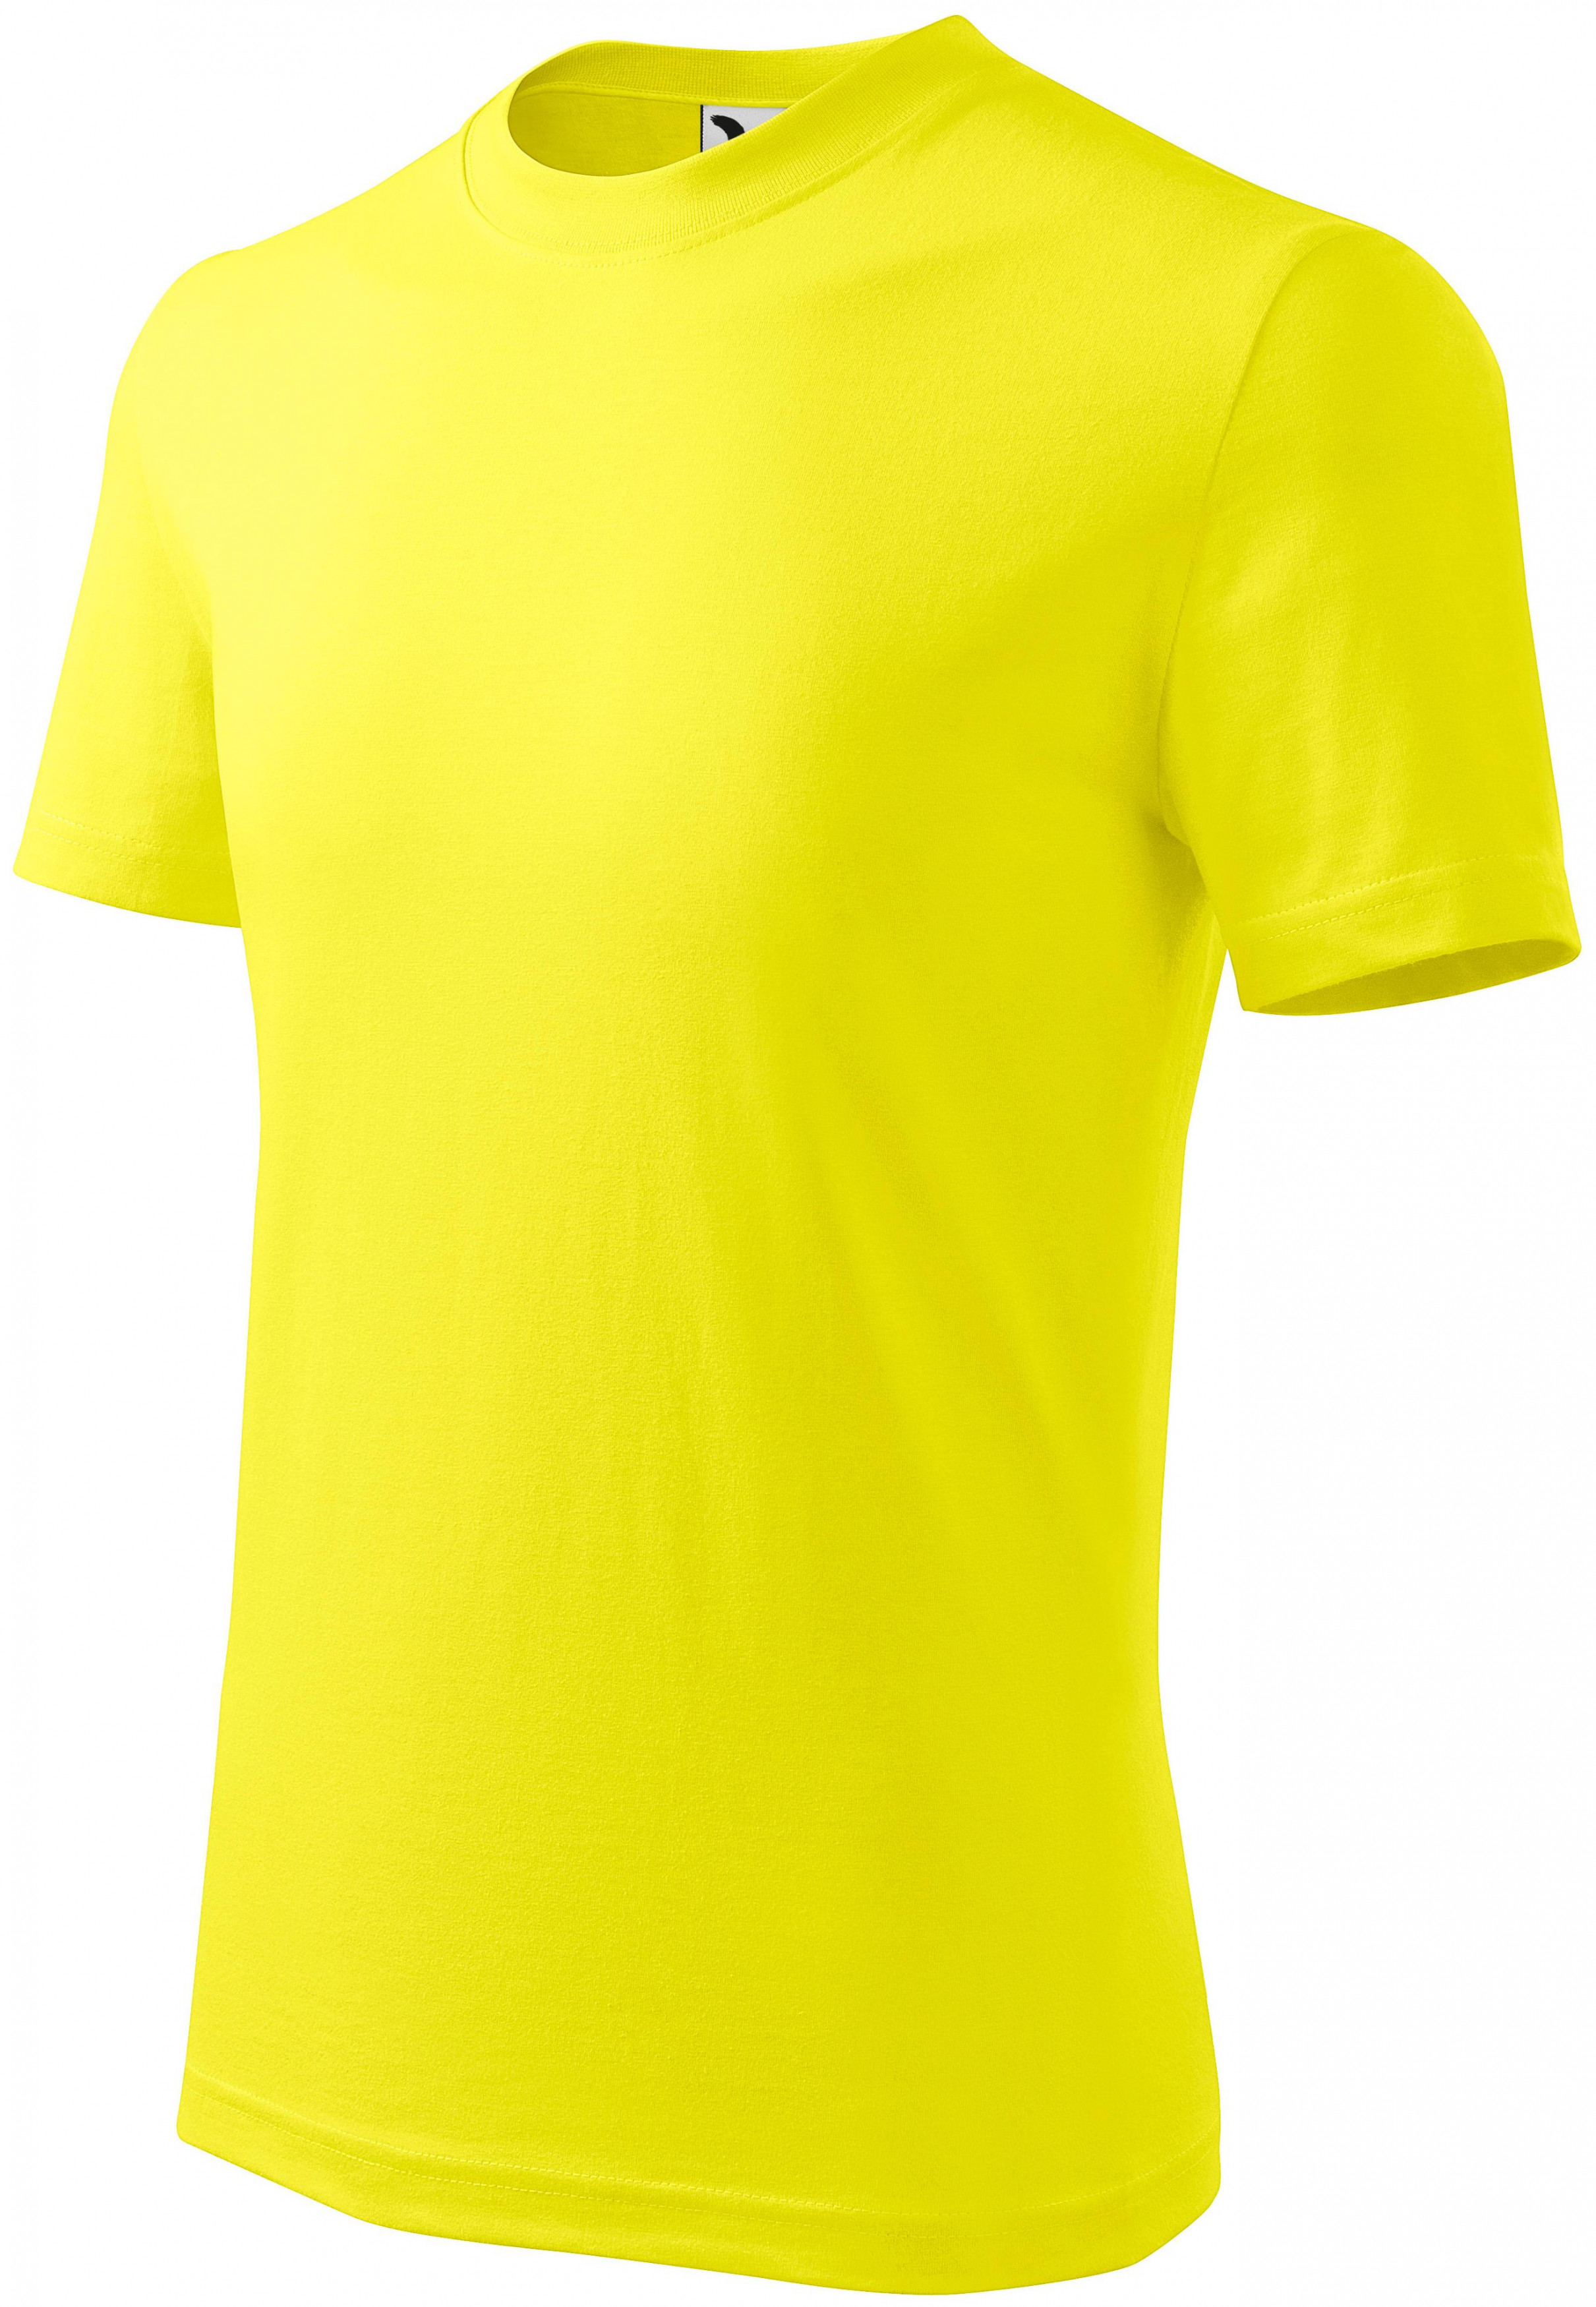 Detské tričko jednoduché, citrónová, 146cm / 10rokov